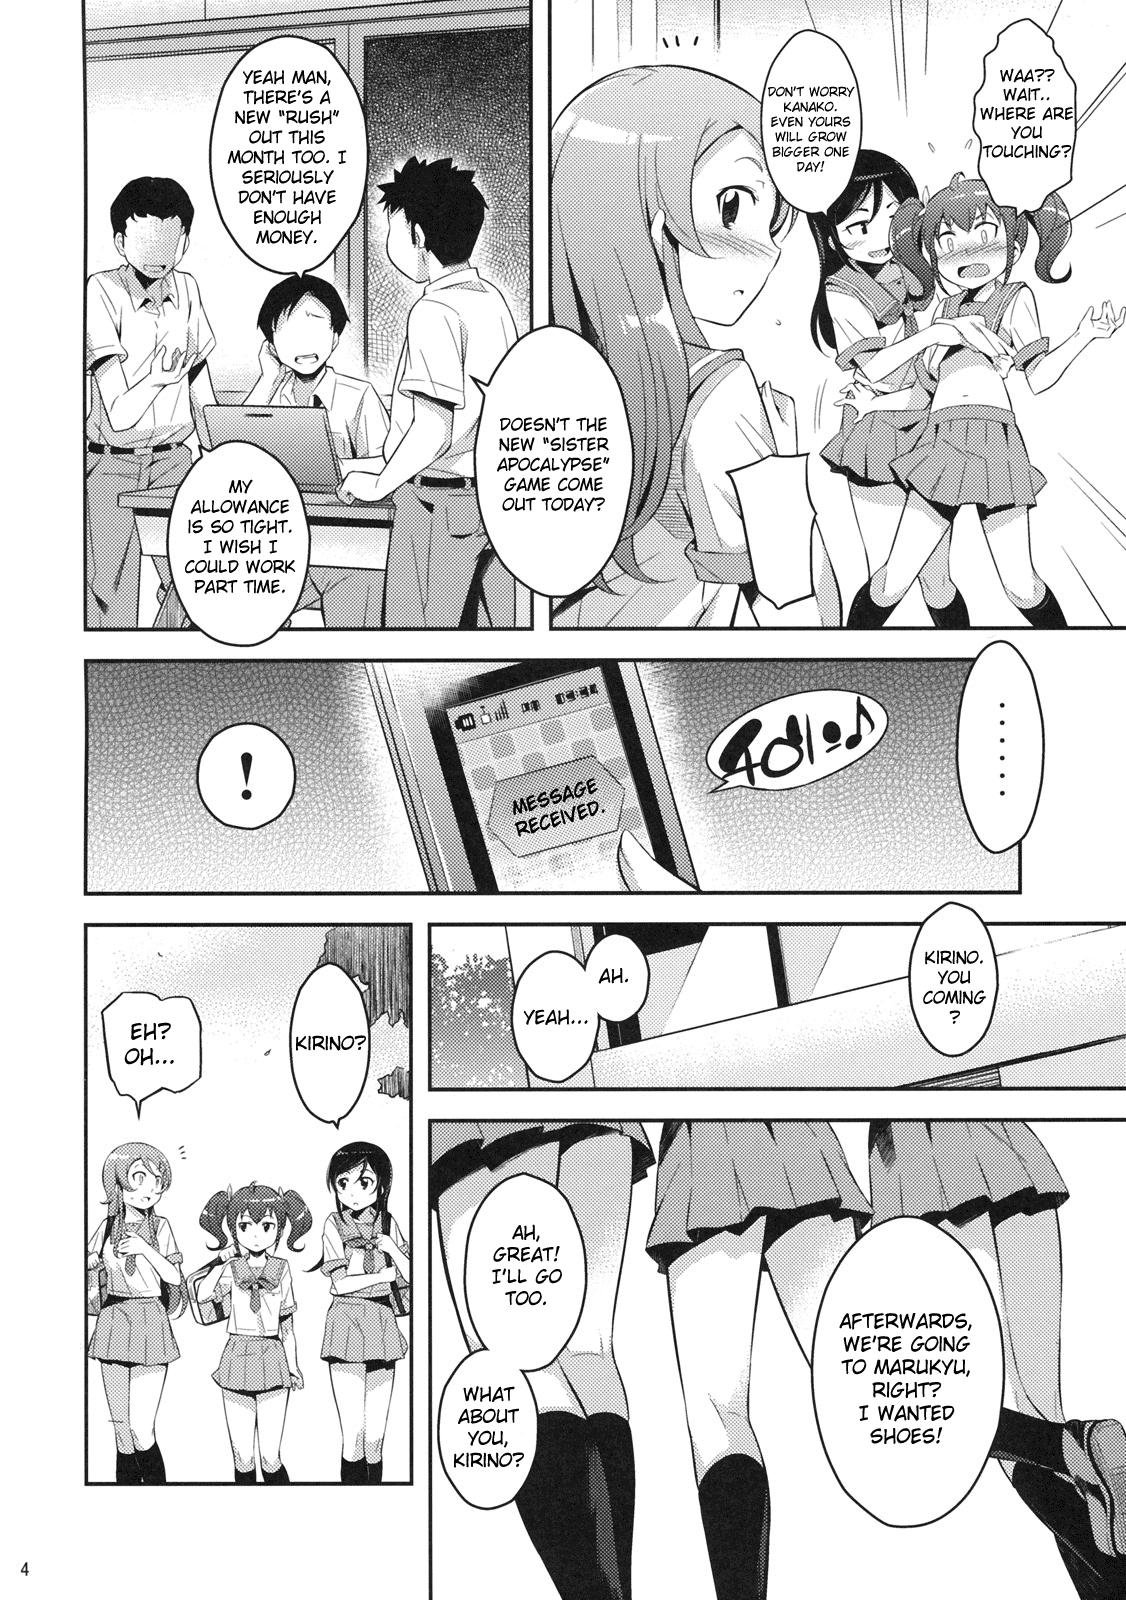 Fucking Girls Kirikiri Mai - Ore no imouto ga konna ni kawaii wake ga nai Cams - Page 3